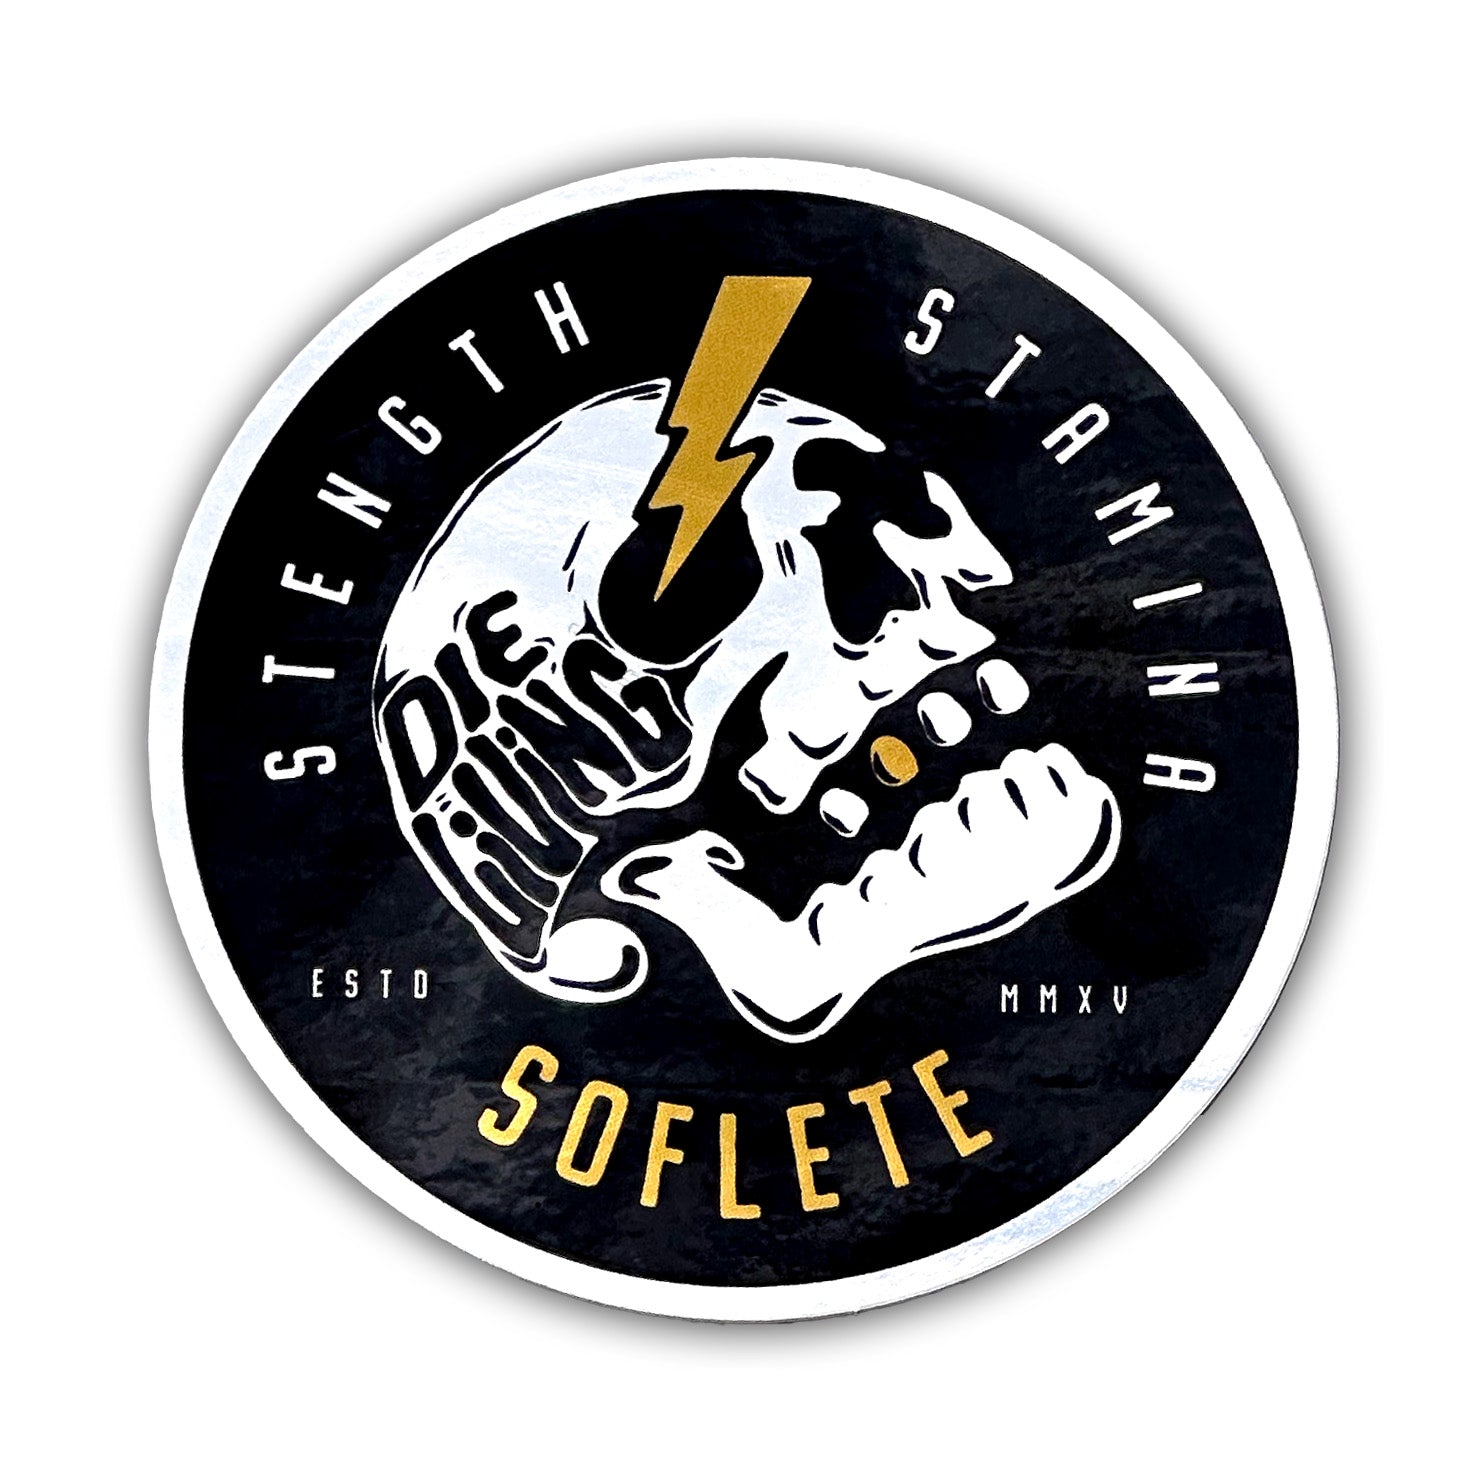 SFLT Stainless Steel Shaker - SOFLETE